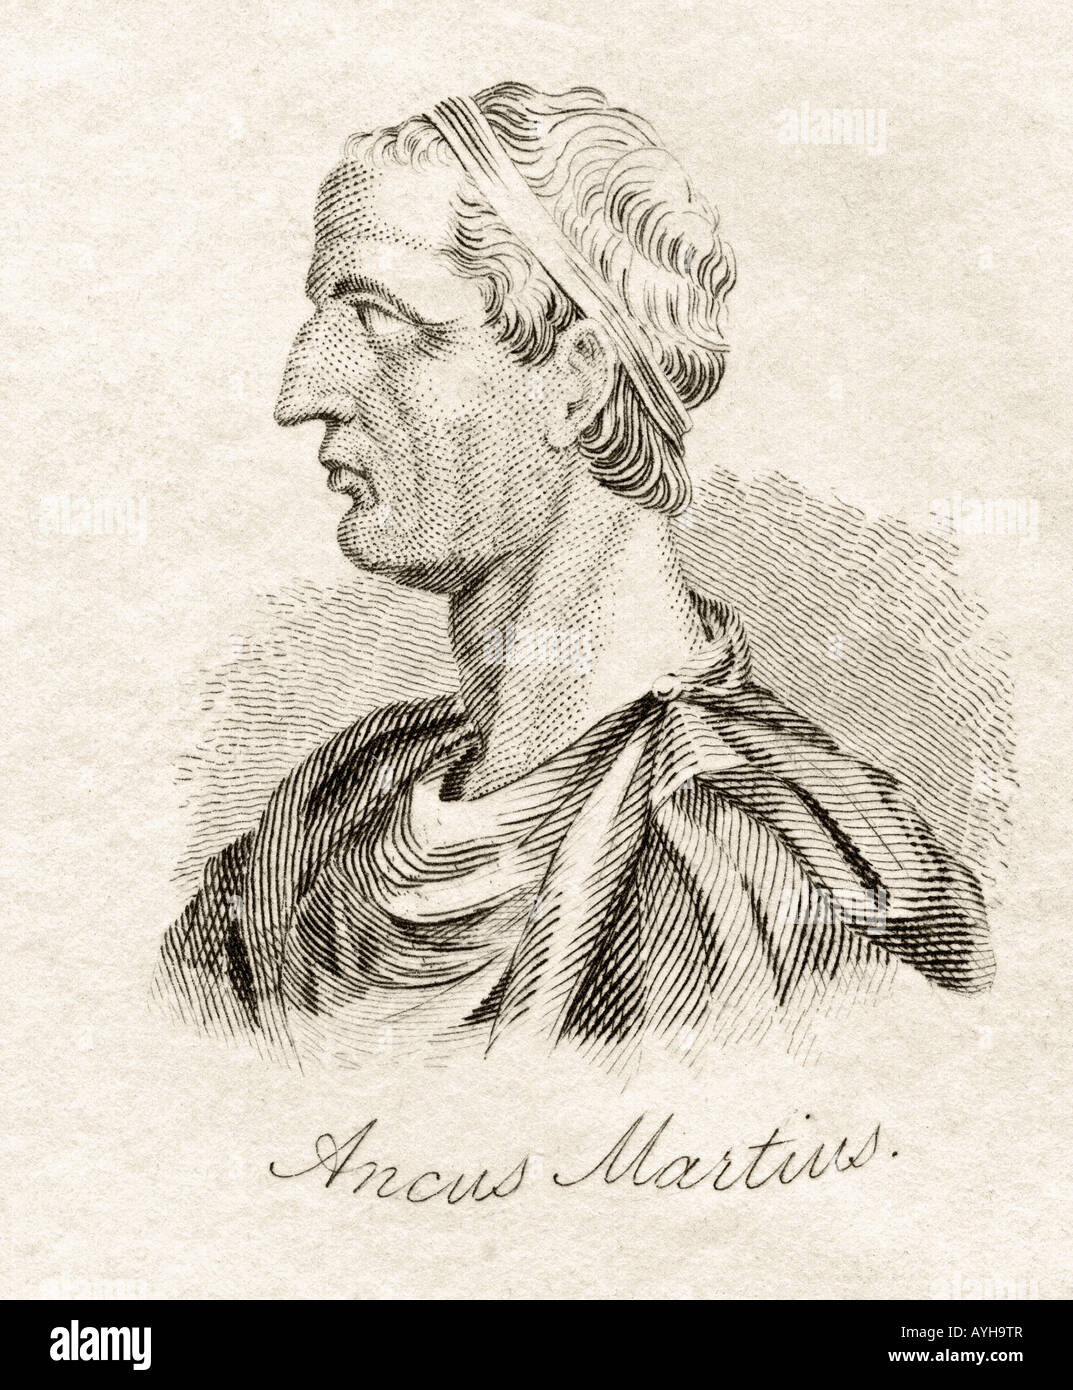 Ancus Marcius, 640BC - 616BC. Quatrième roi de Rome. Extrait du livre Crabb's Historical Dictionary, publié en 1825. Banque D'Images